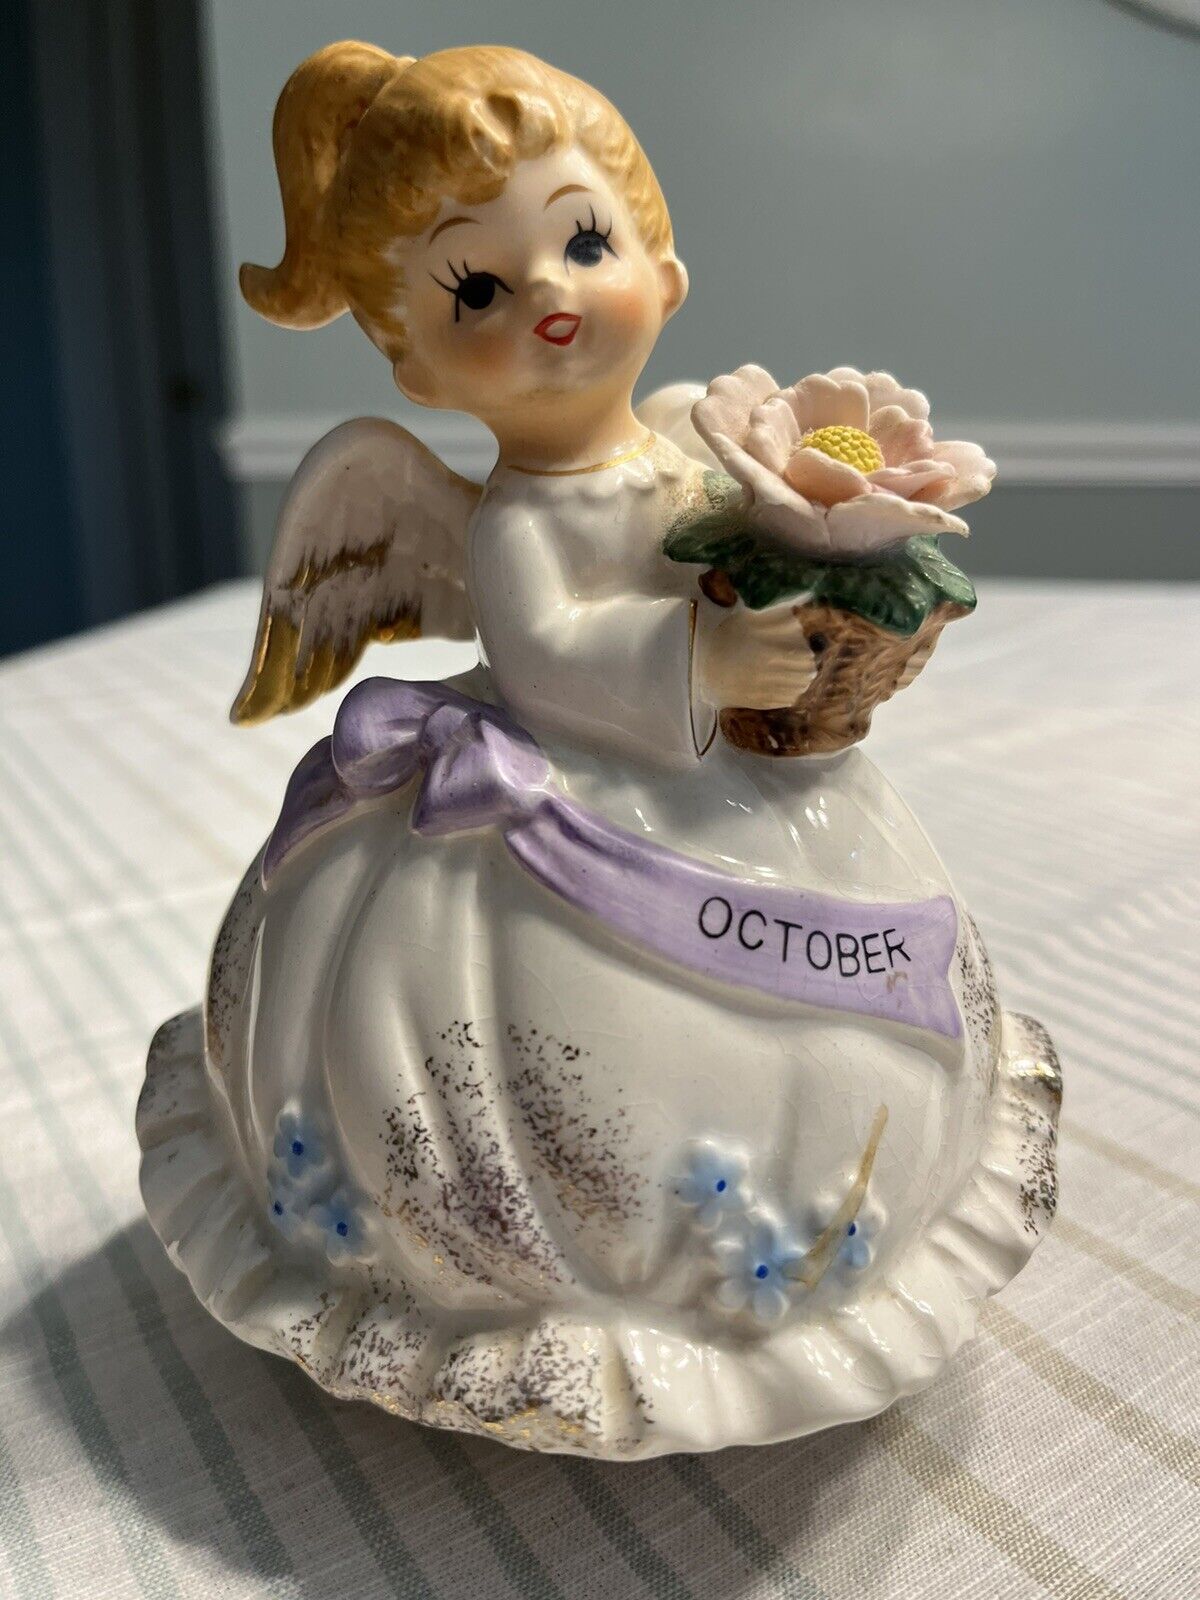 Vtg 1960’s Japan Porcelain Ceramic “October” Girl Angel Figurine Music Box